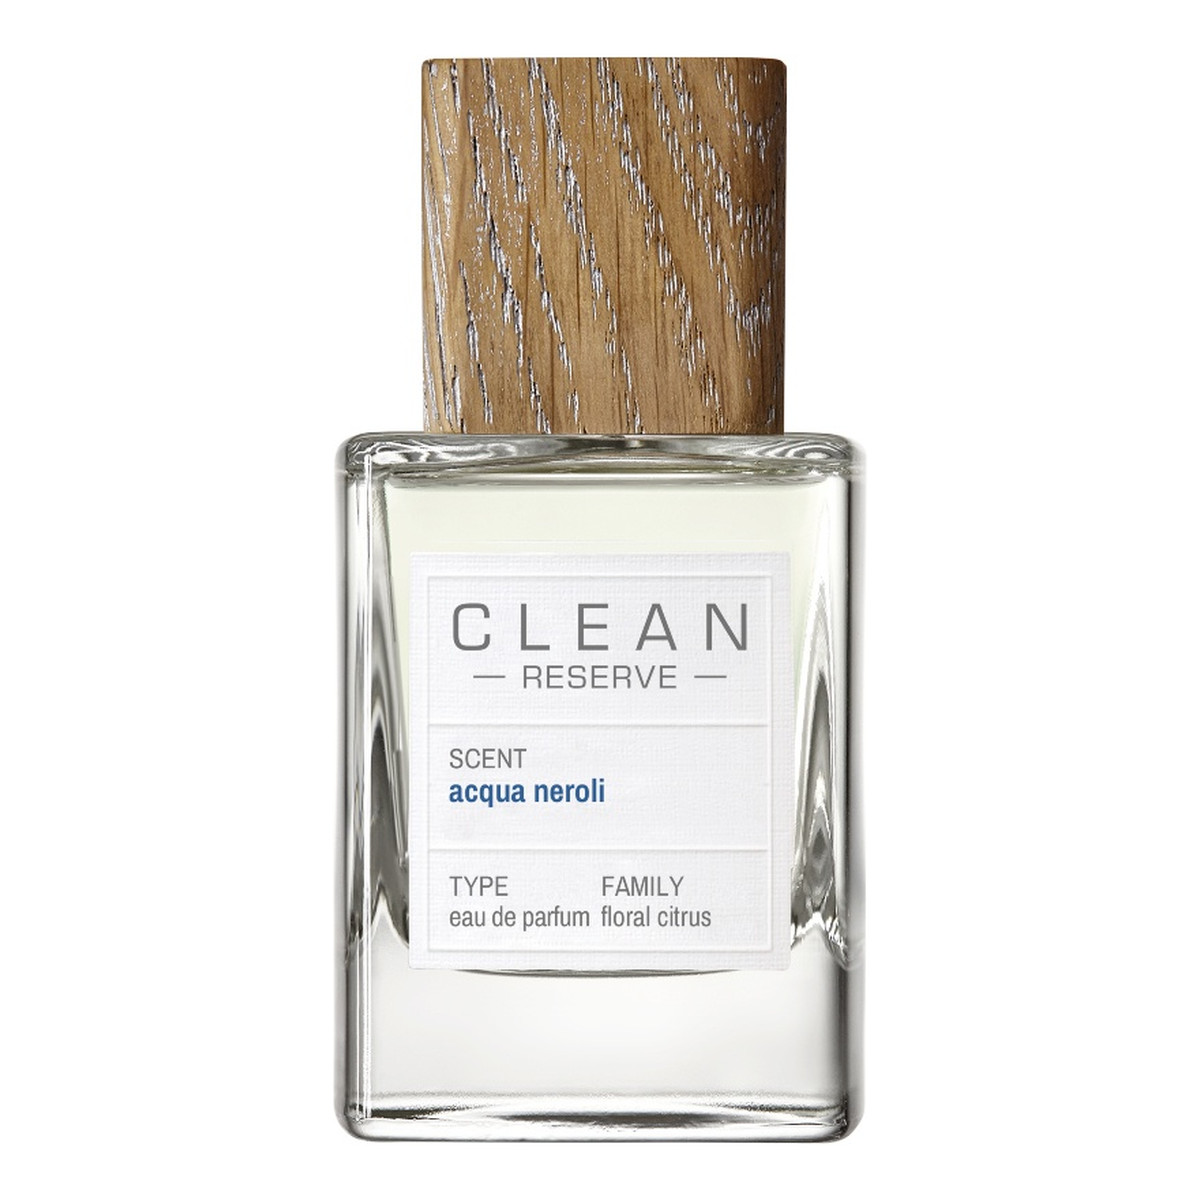 Clean Reserve Acqua Neroli Woda perfumowana spray 50ml